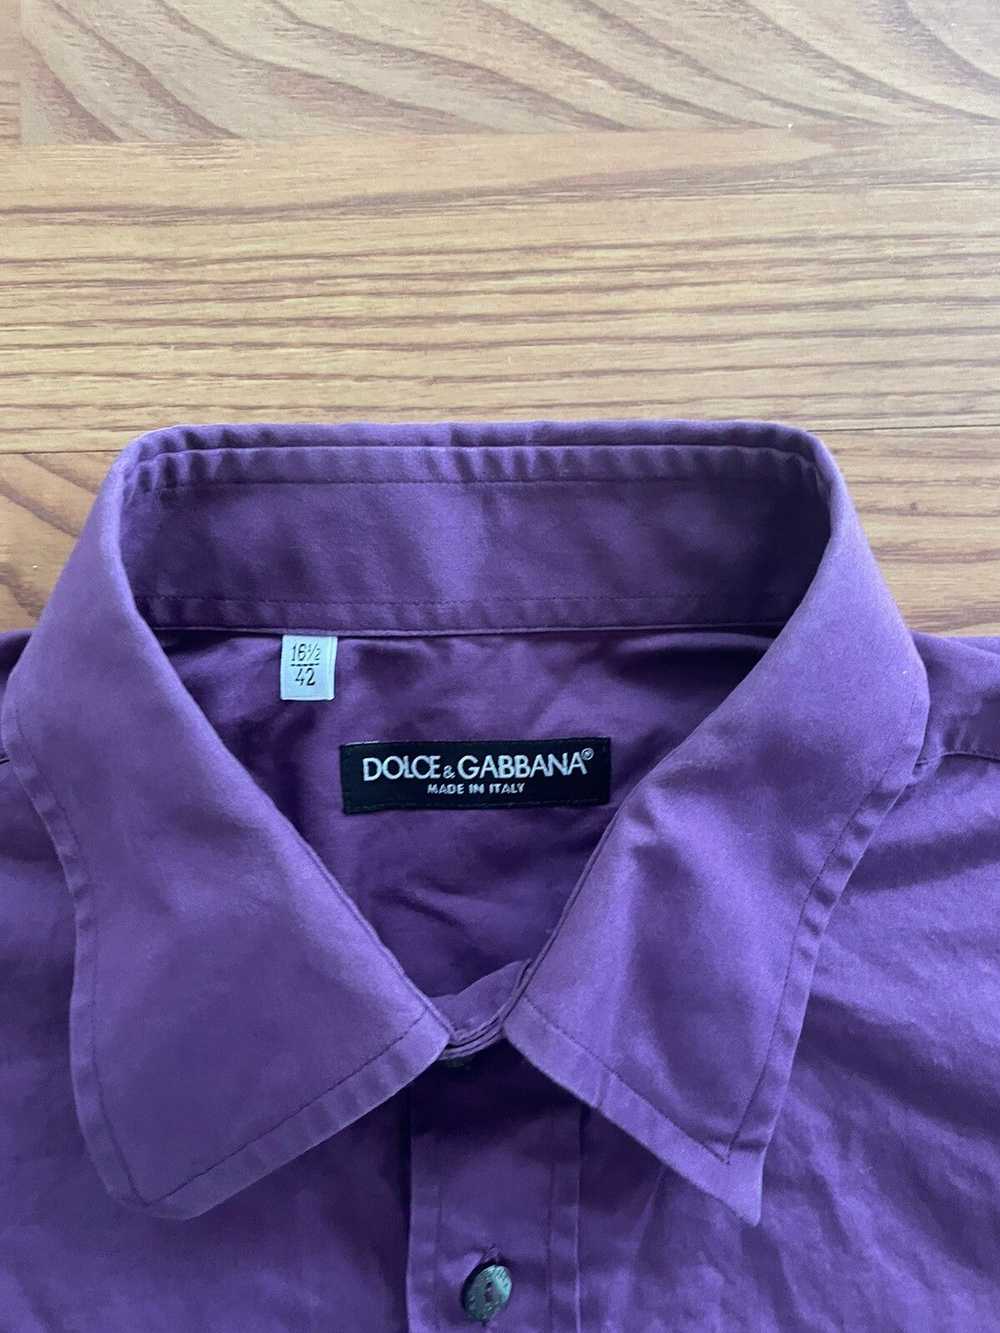 Dolce & Gabbana Purple dolce and Gabbana shirt - image 2